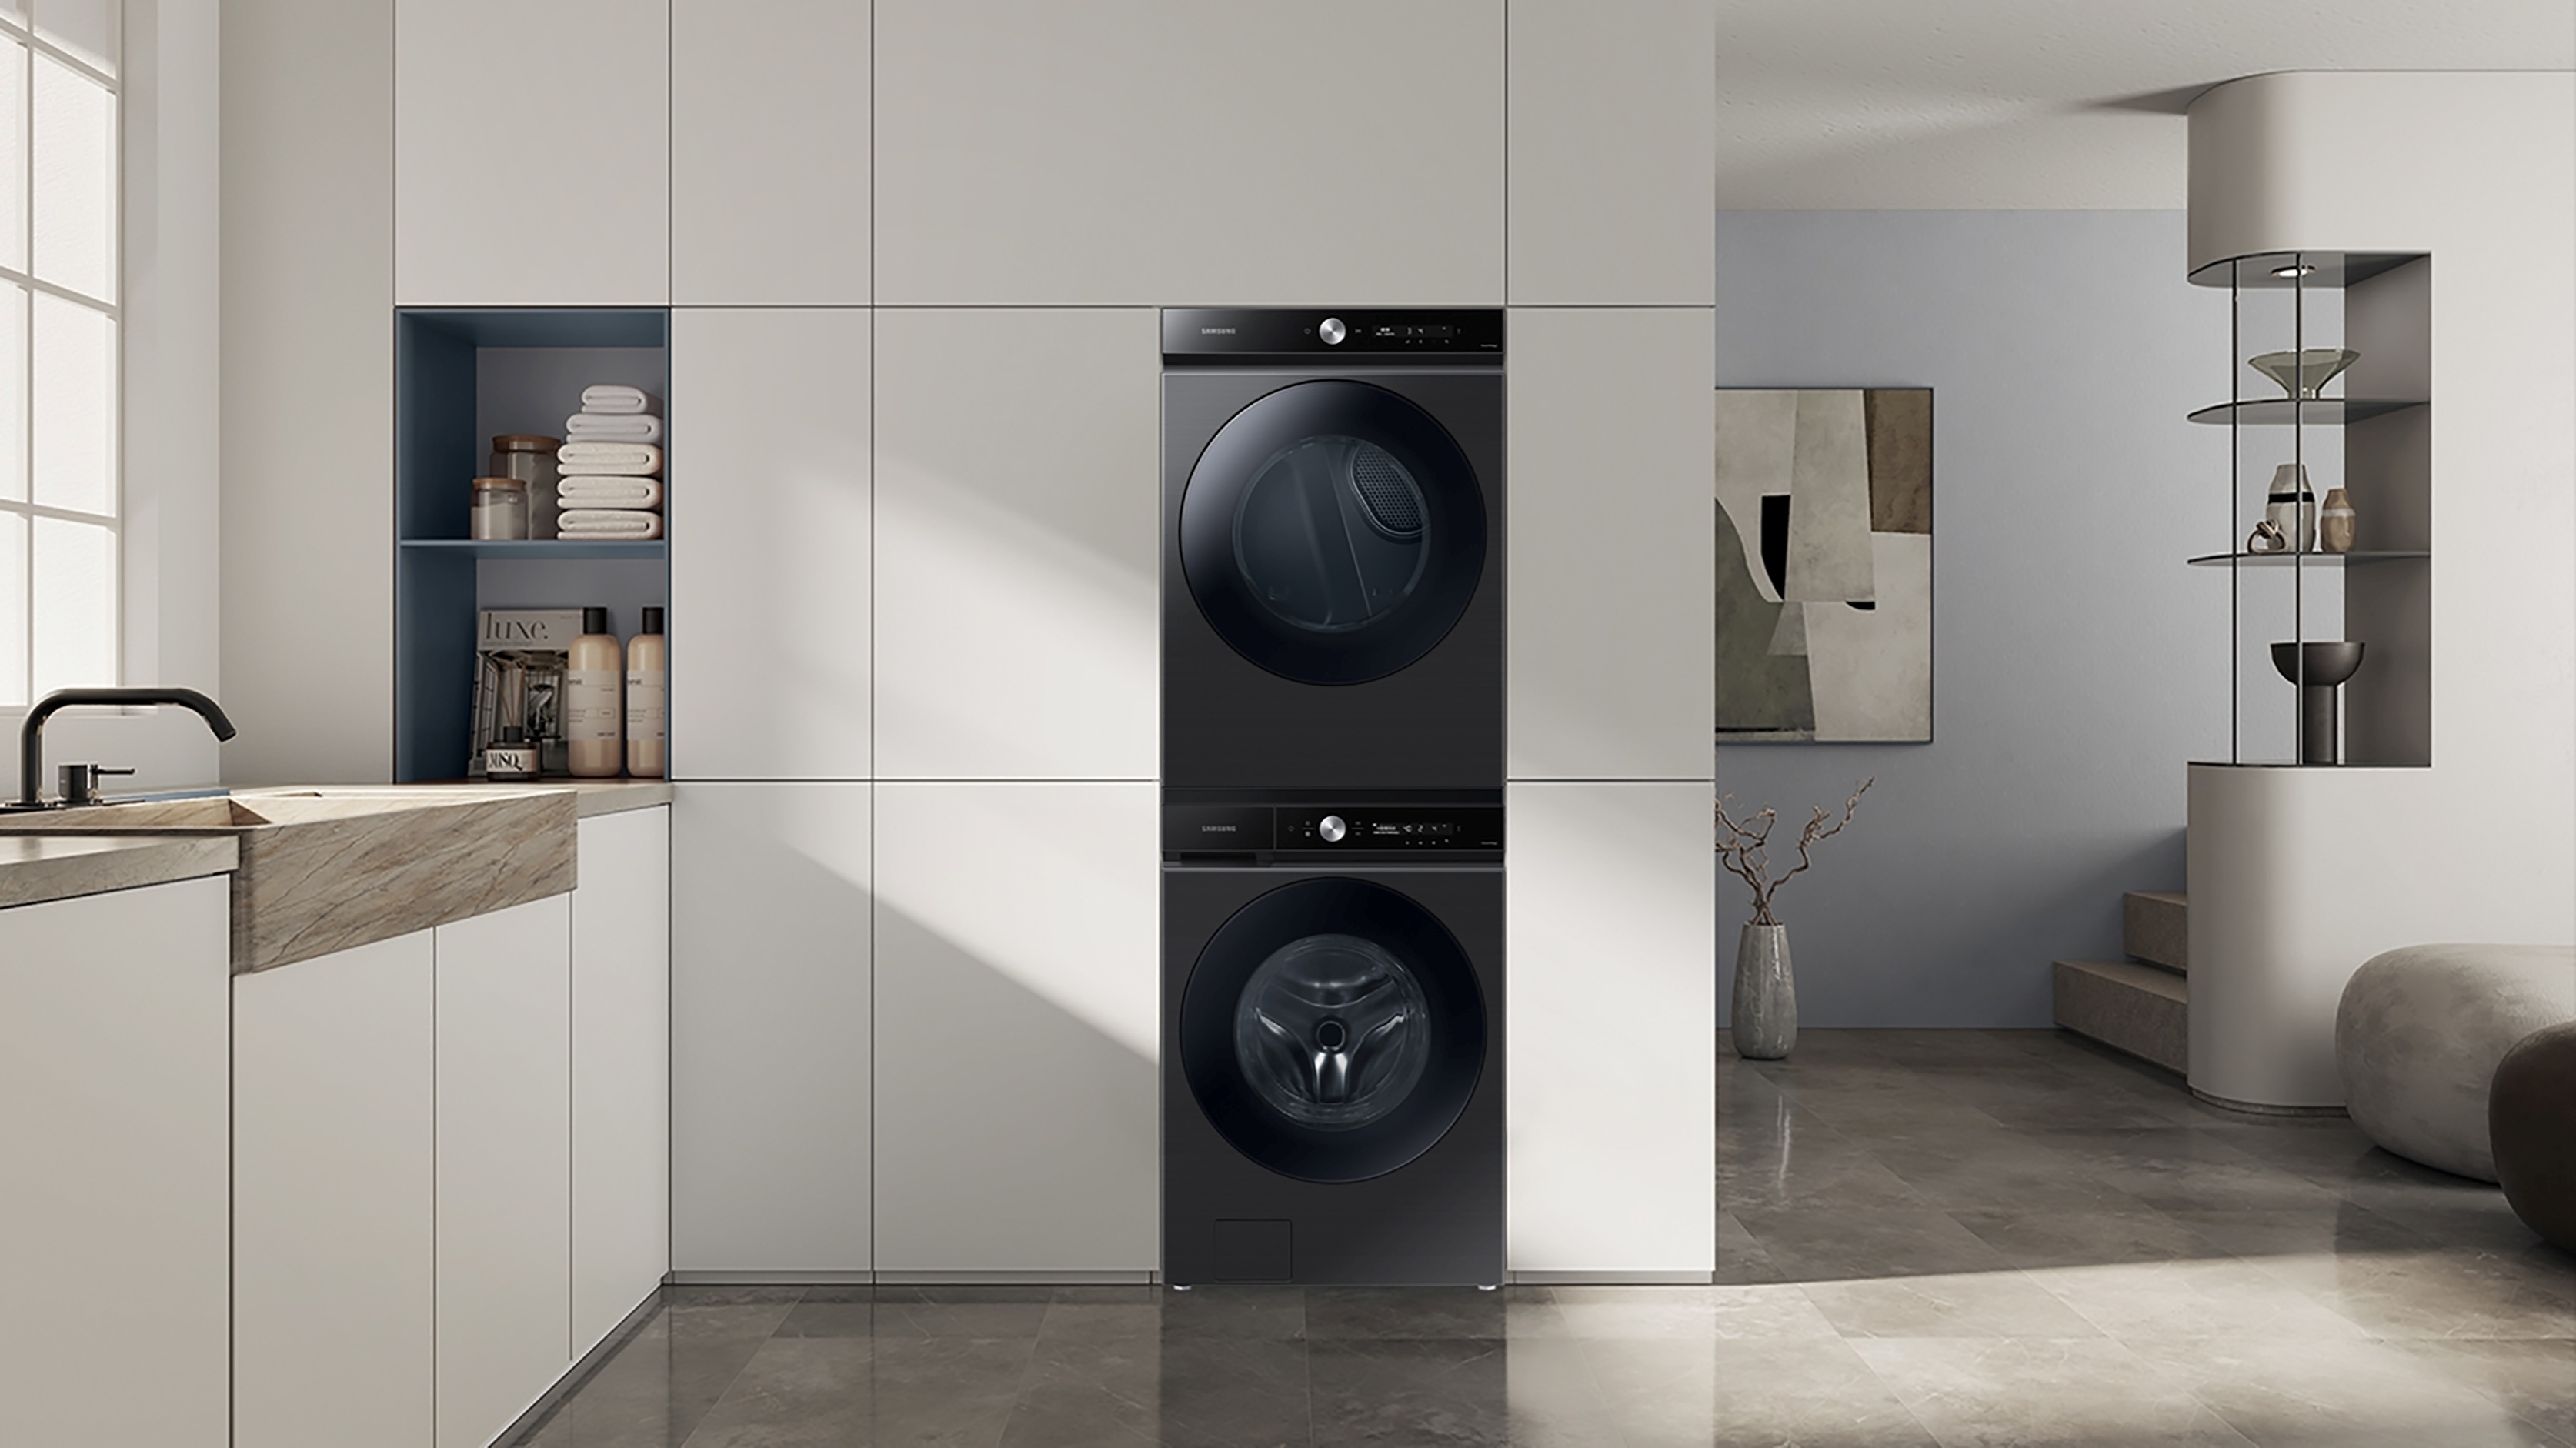 BESPOKE设计品味系列洗衣机荣获金级省水标章，其搭载的AI智慧洗衣功能，能自动侦测衣物量、脏污程度，提供最佳洗程，省水同时省洗剂。台湾三星／提供